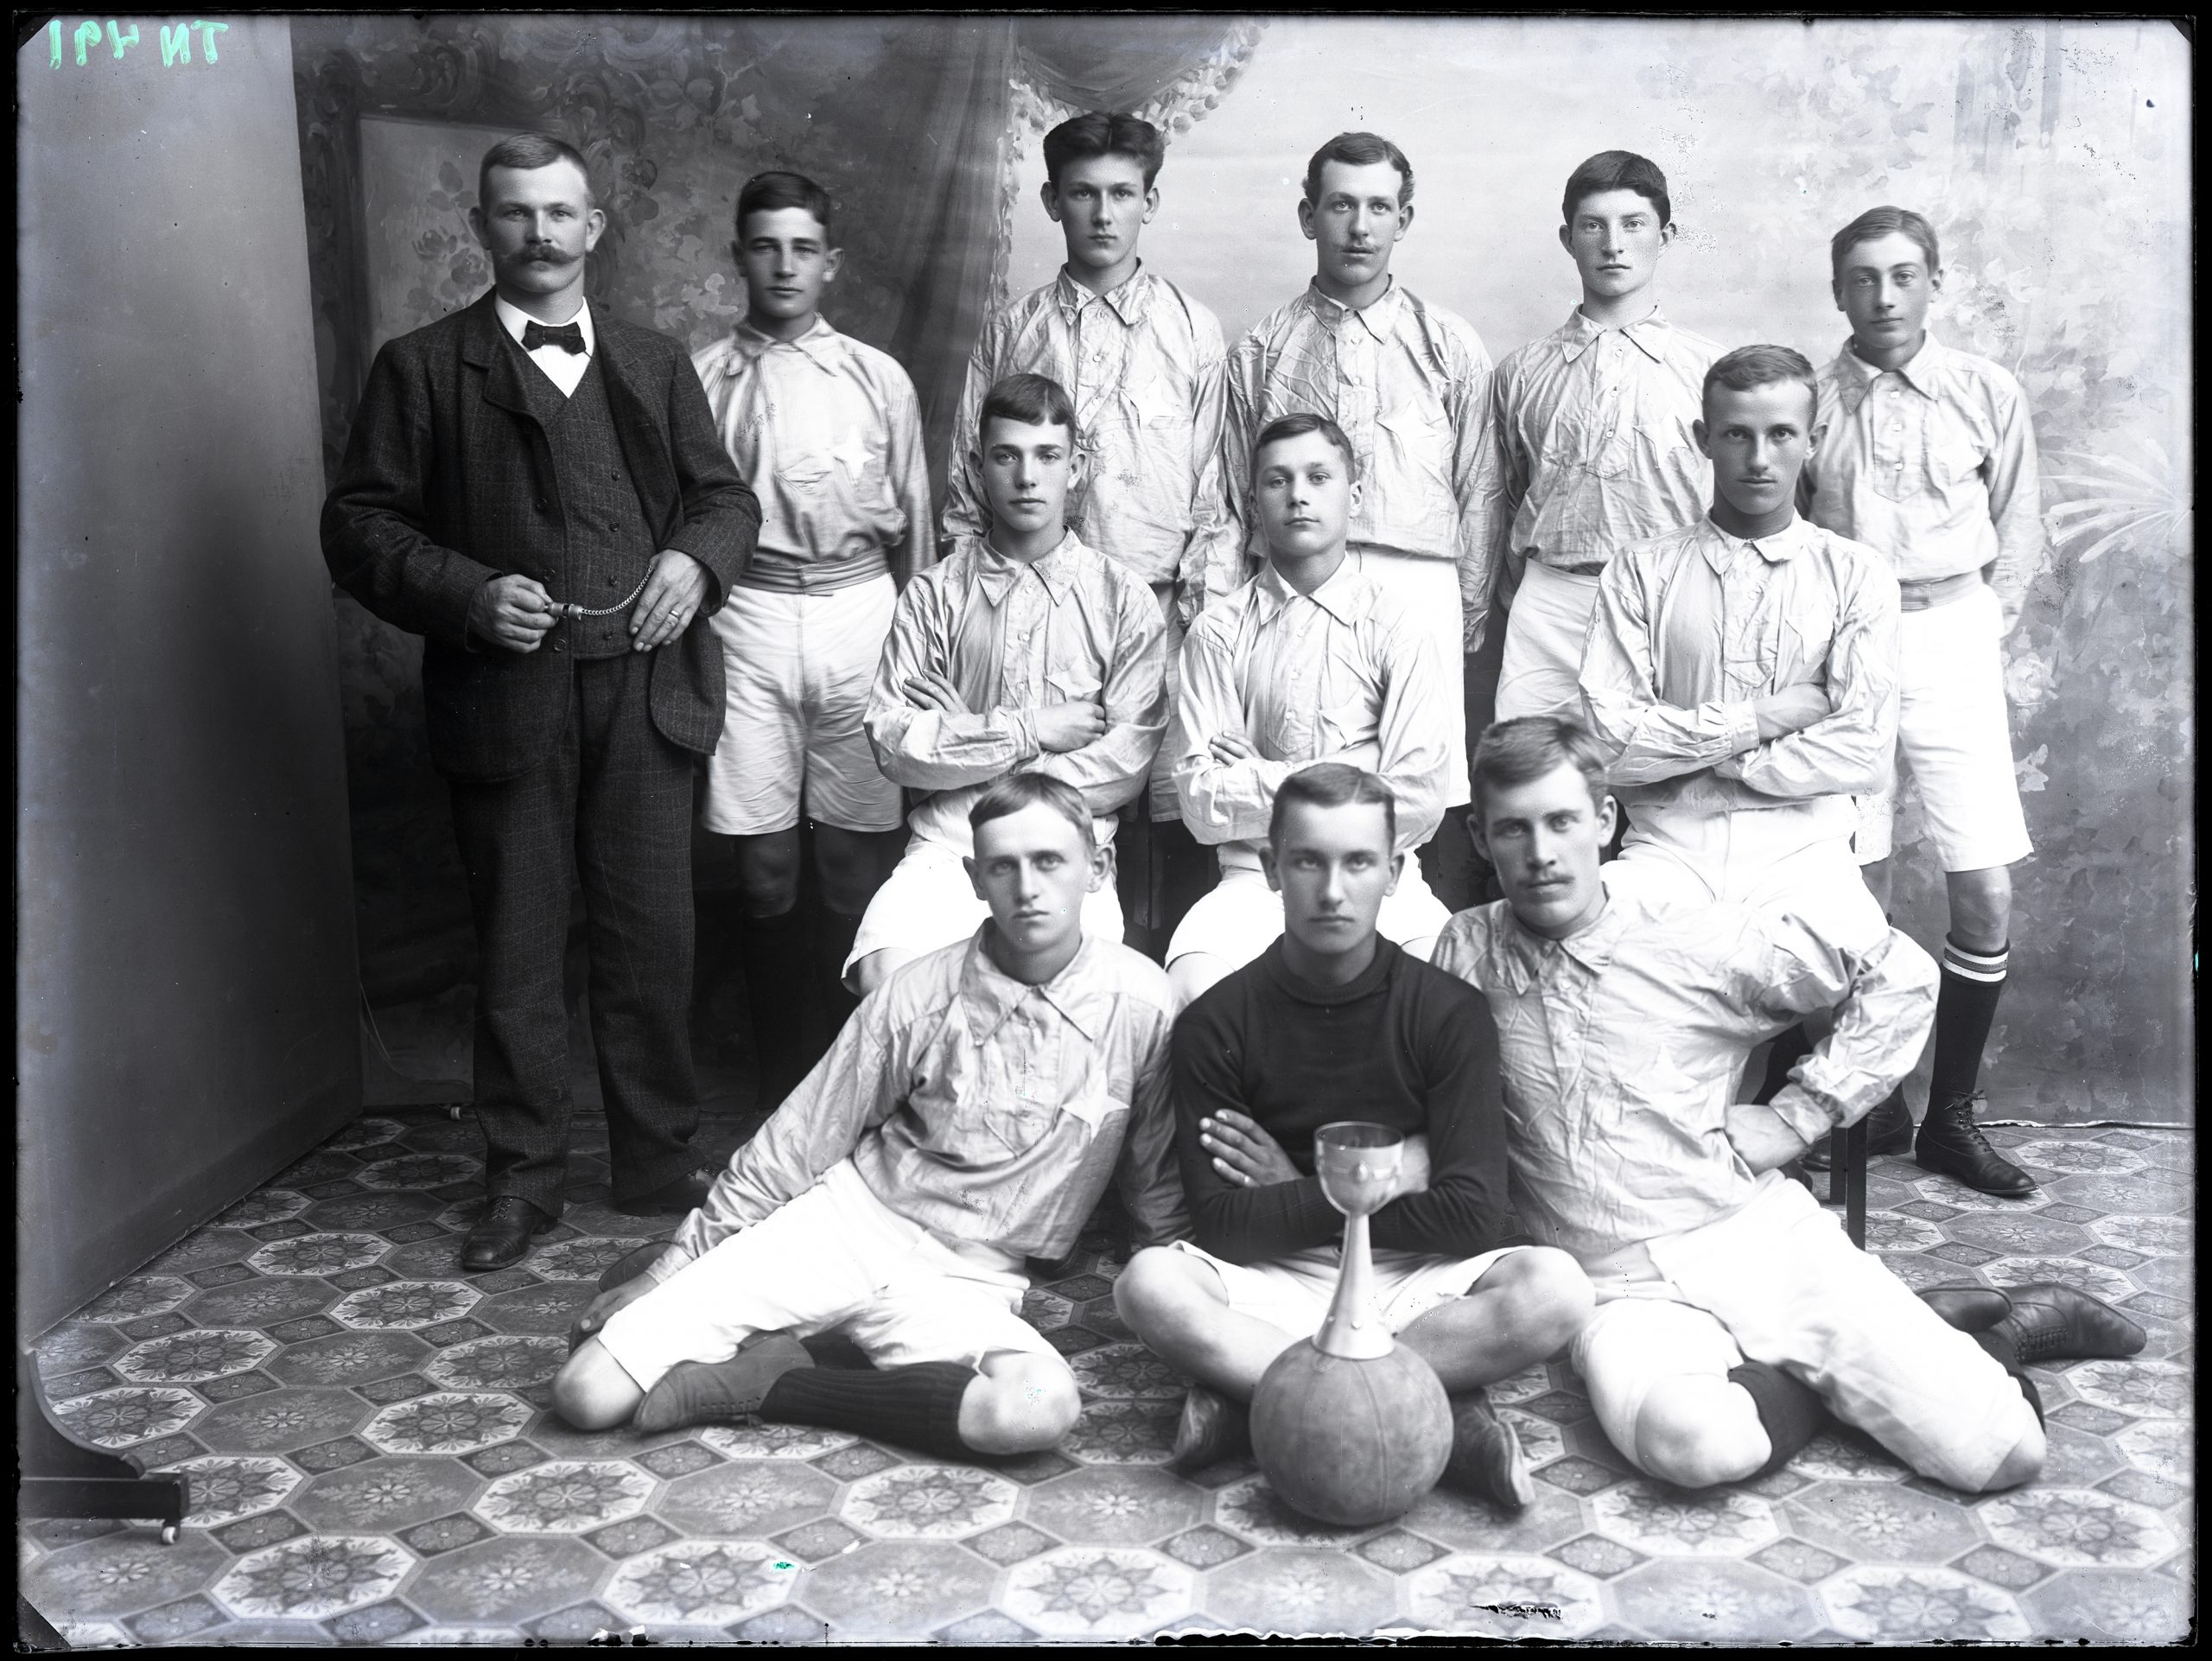 Svartvitt foto med en grupp män iförda skjortor och kortbyxor står och sitter framför en fotboll med en pokal.